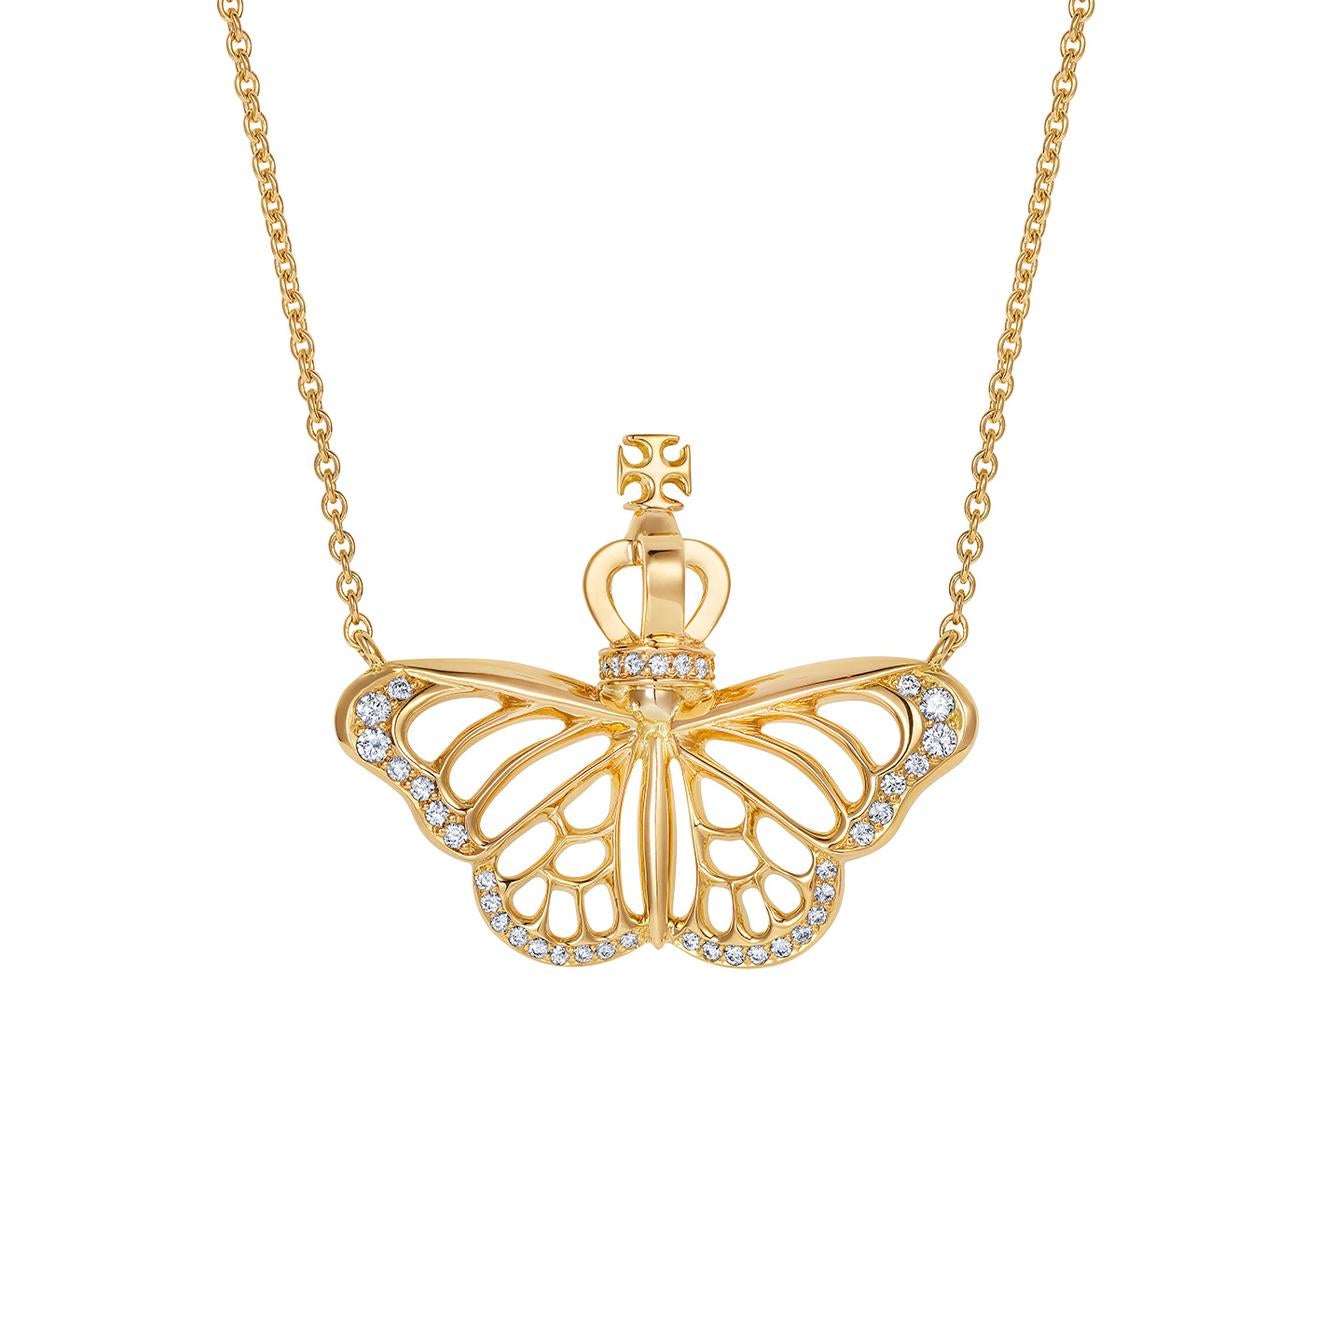 Nous sommes ravis d'avoir créé un pendentif papillon monarque très spécial en or jaune 18 carats avec un poids total de diamants de 0,15 carats - avec une couronne merveilleusement petite et complexe, bien sûr !

Symbolisant l'espoir et les nouveaux